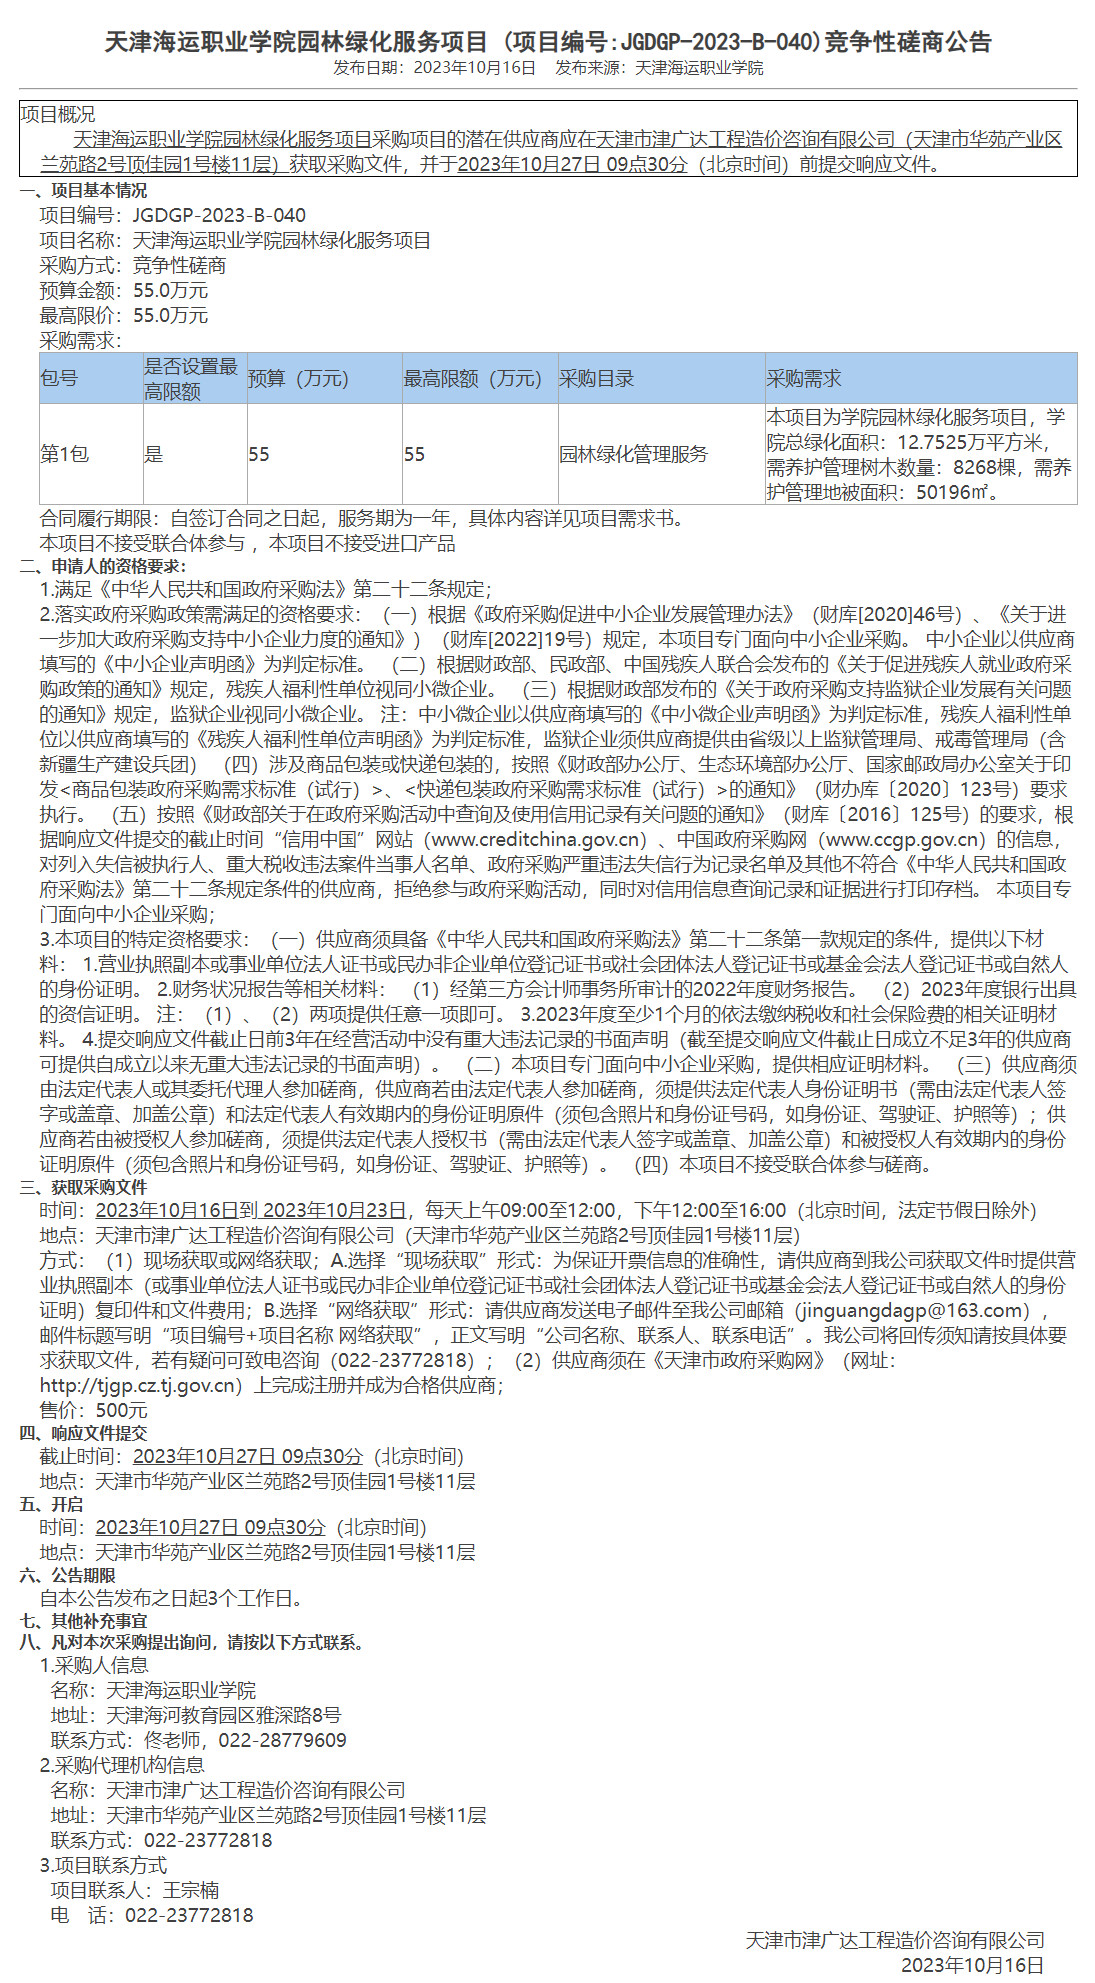 天津海运职业学院园林绿化服务项目(图1)